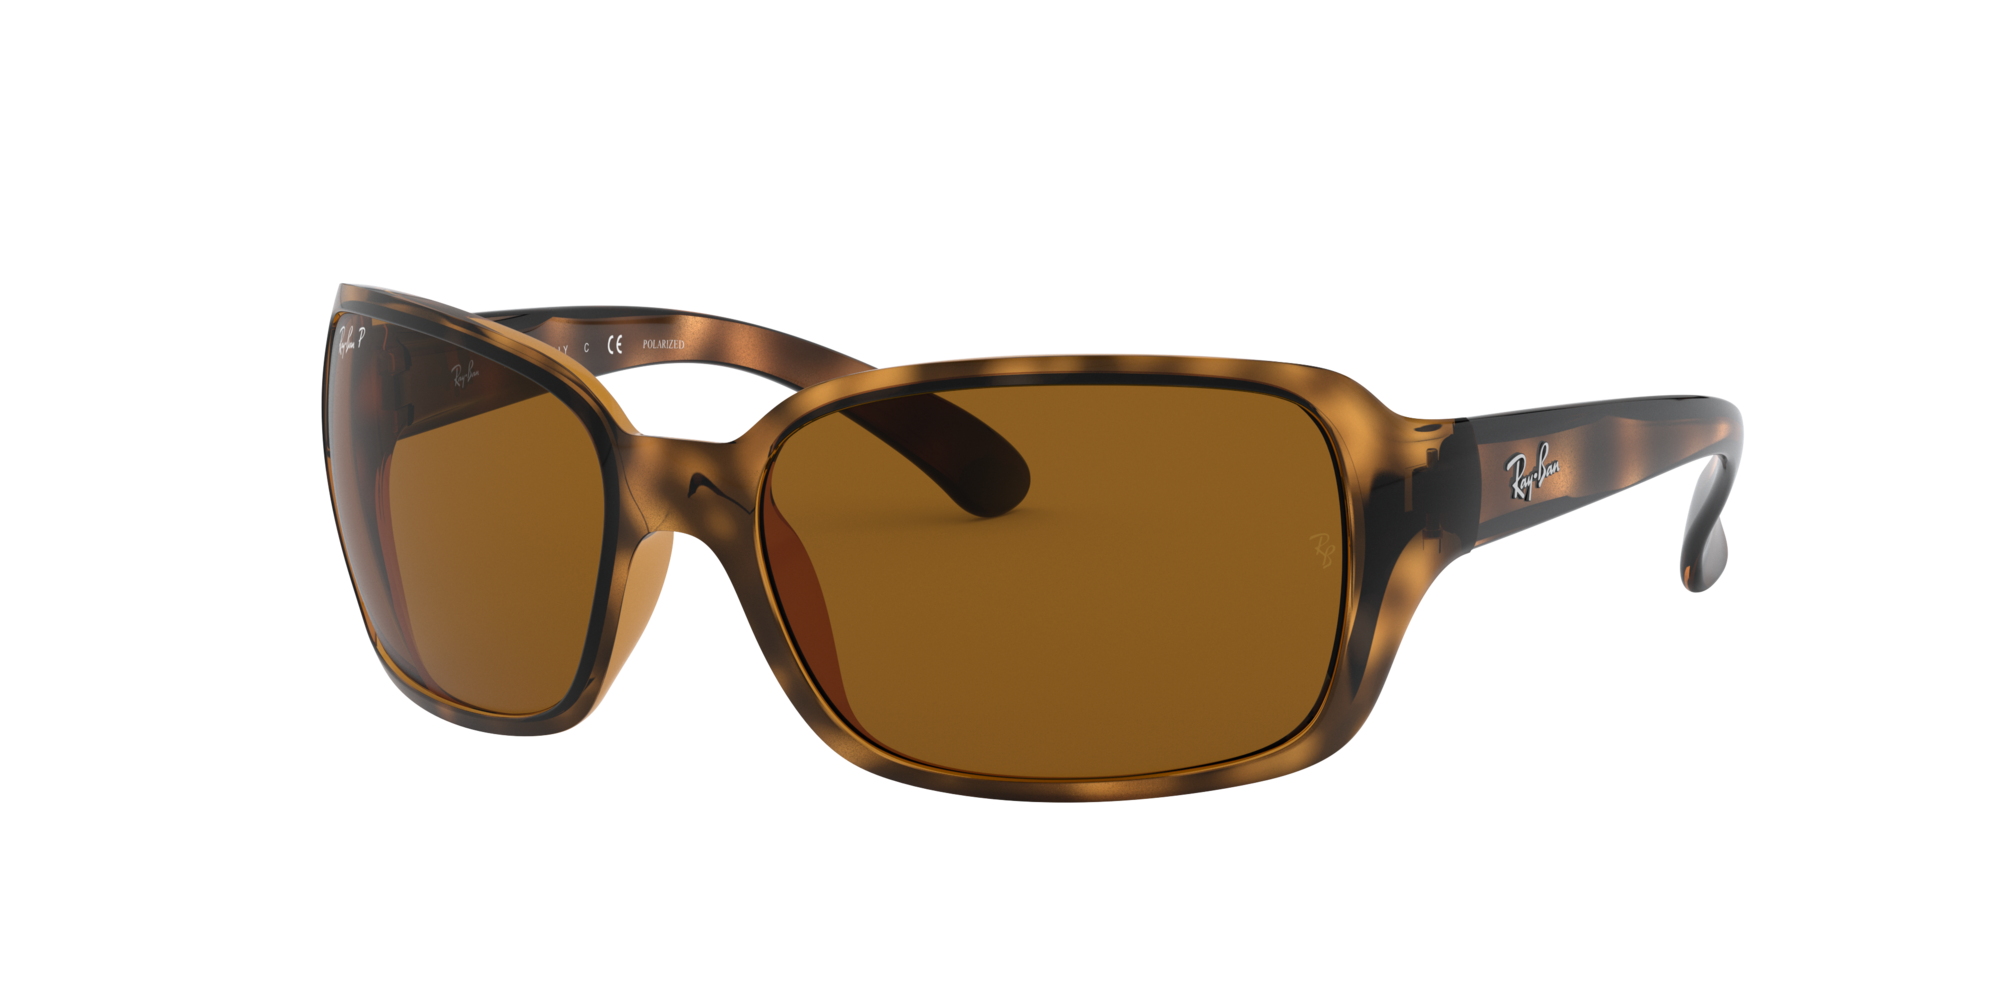 sunglasses for women online shopping